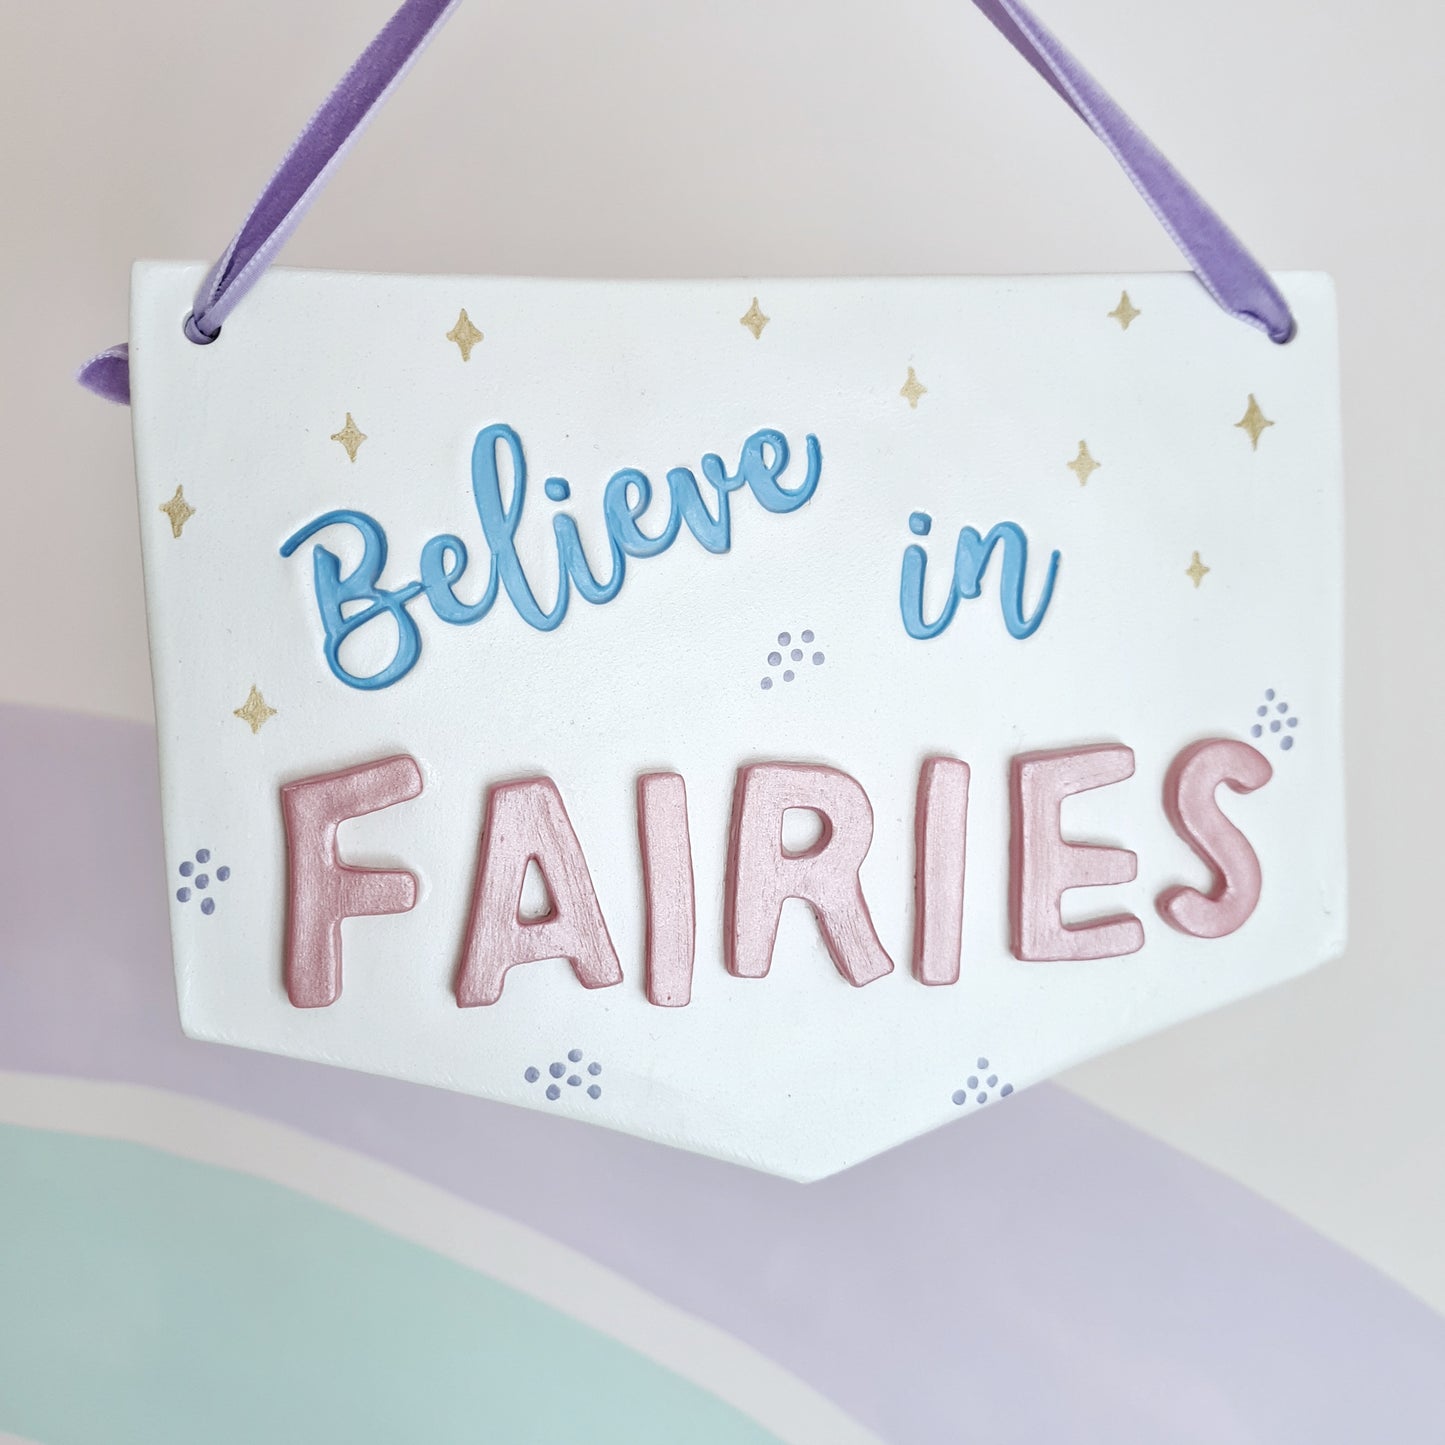 Believe in Fairies sign